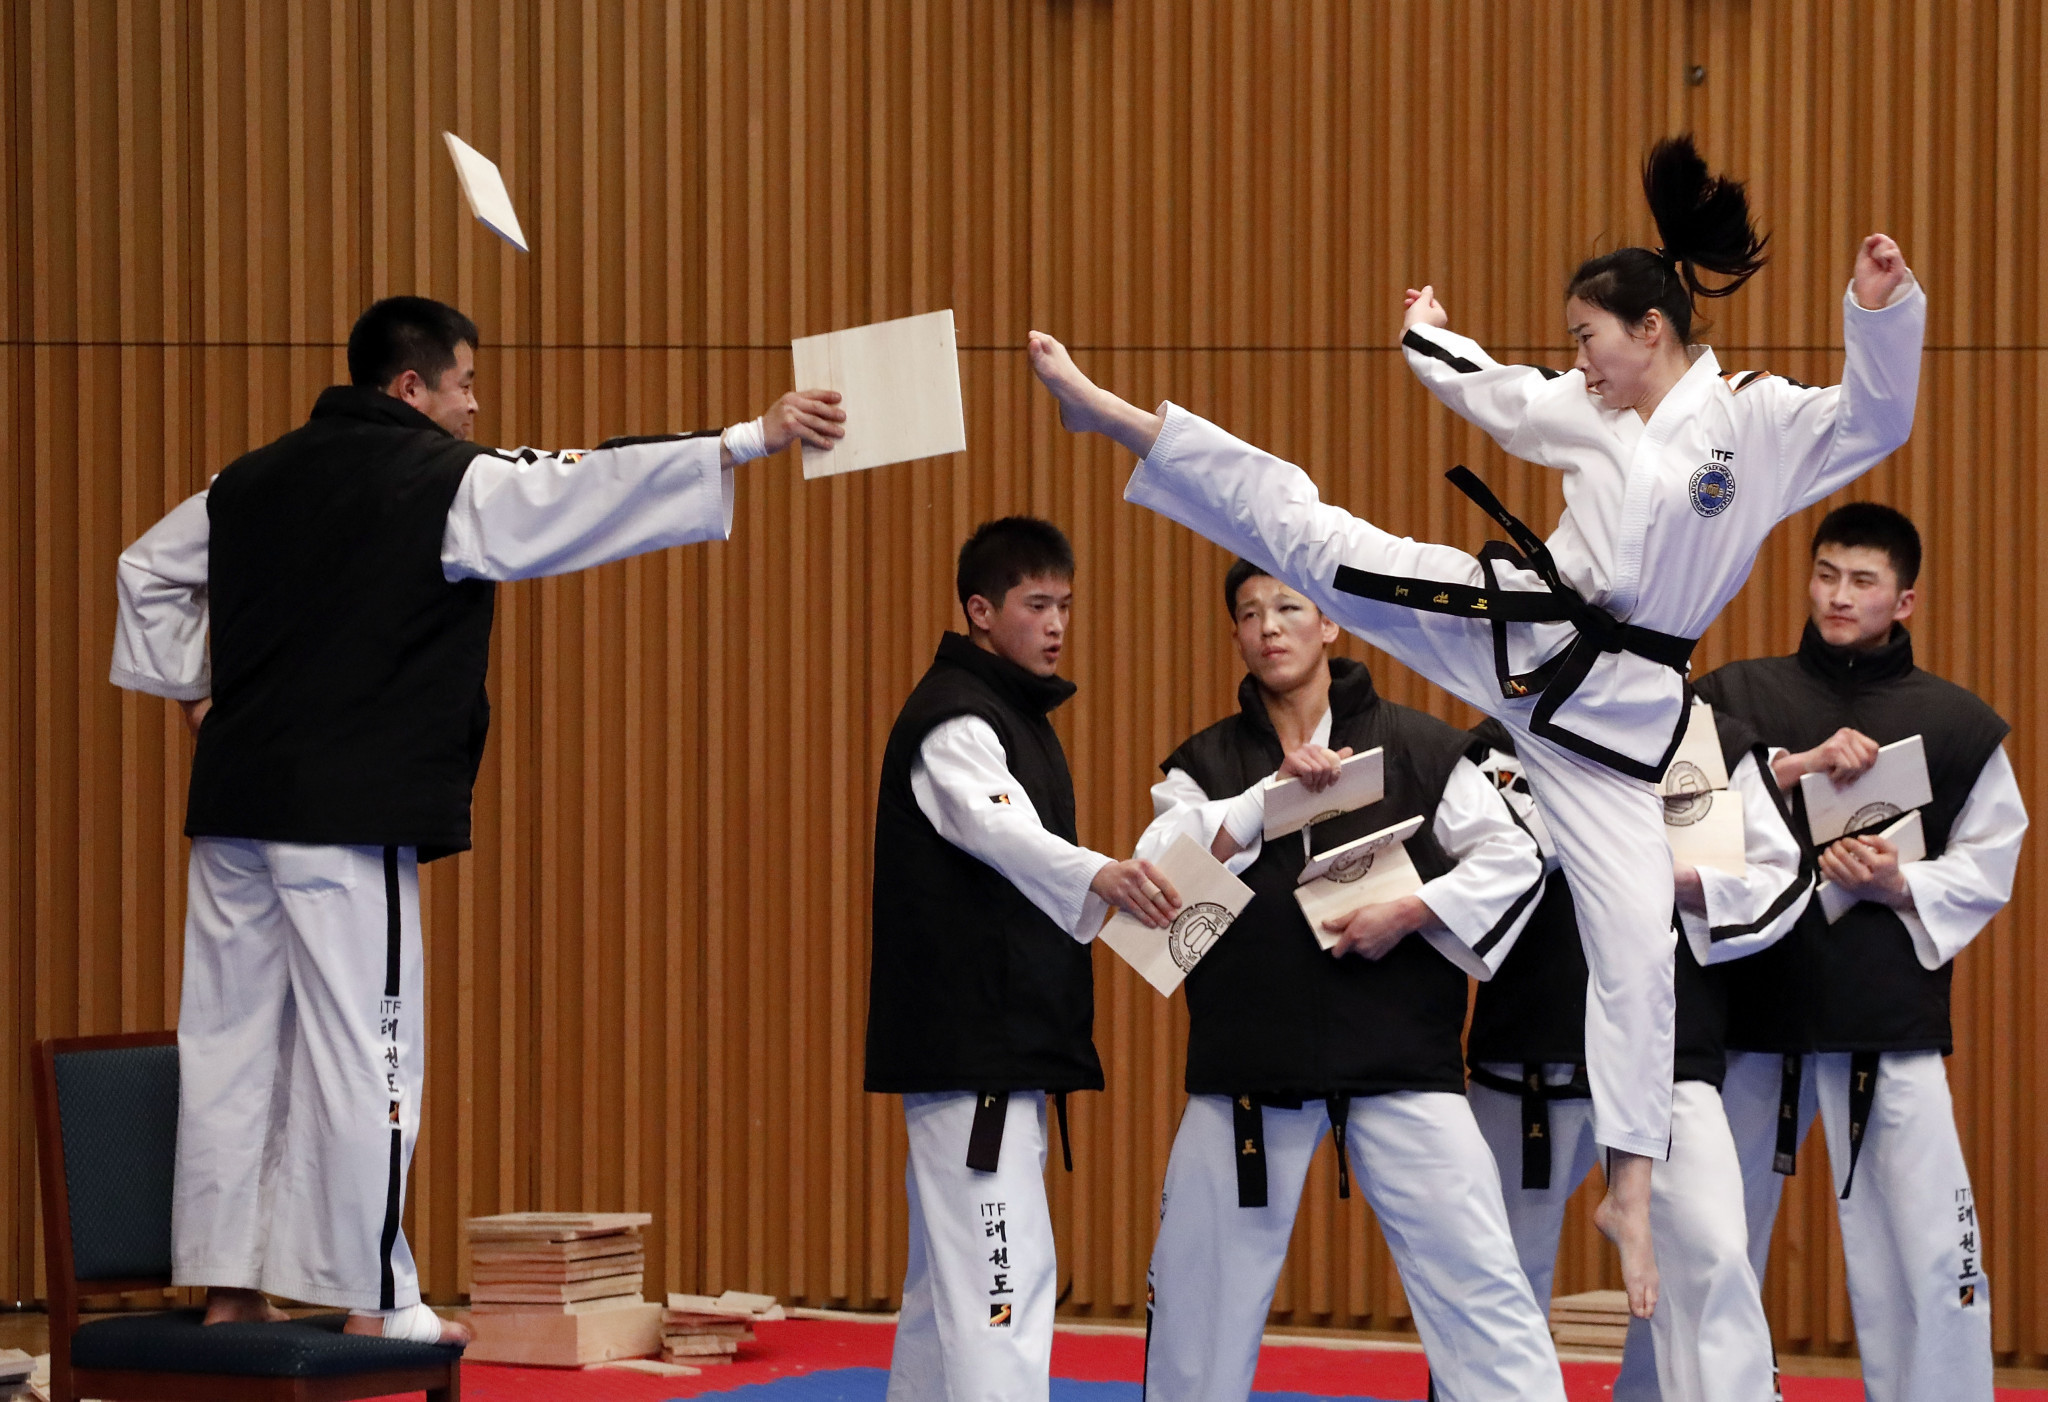 Choue reflects on "historic" joint taekwondo demonstration team at Pyeongchang 2018